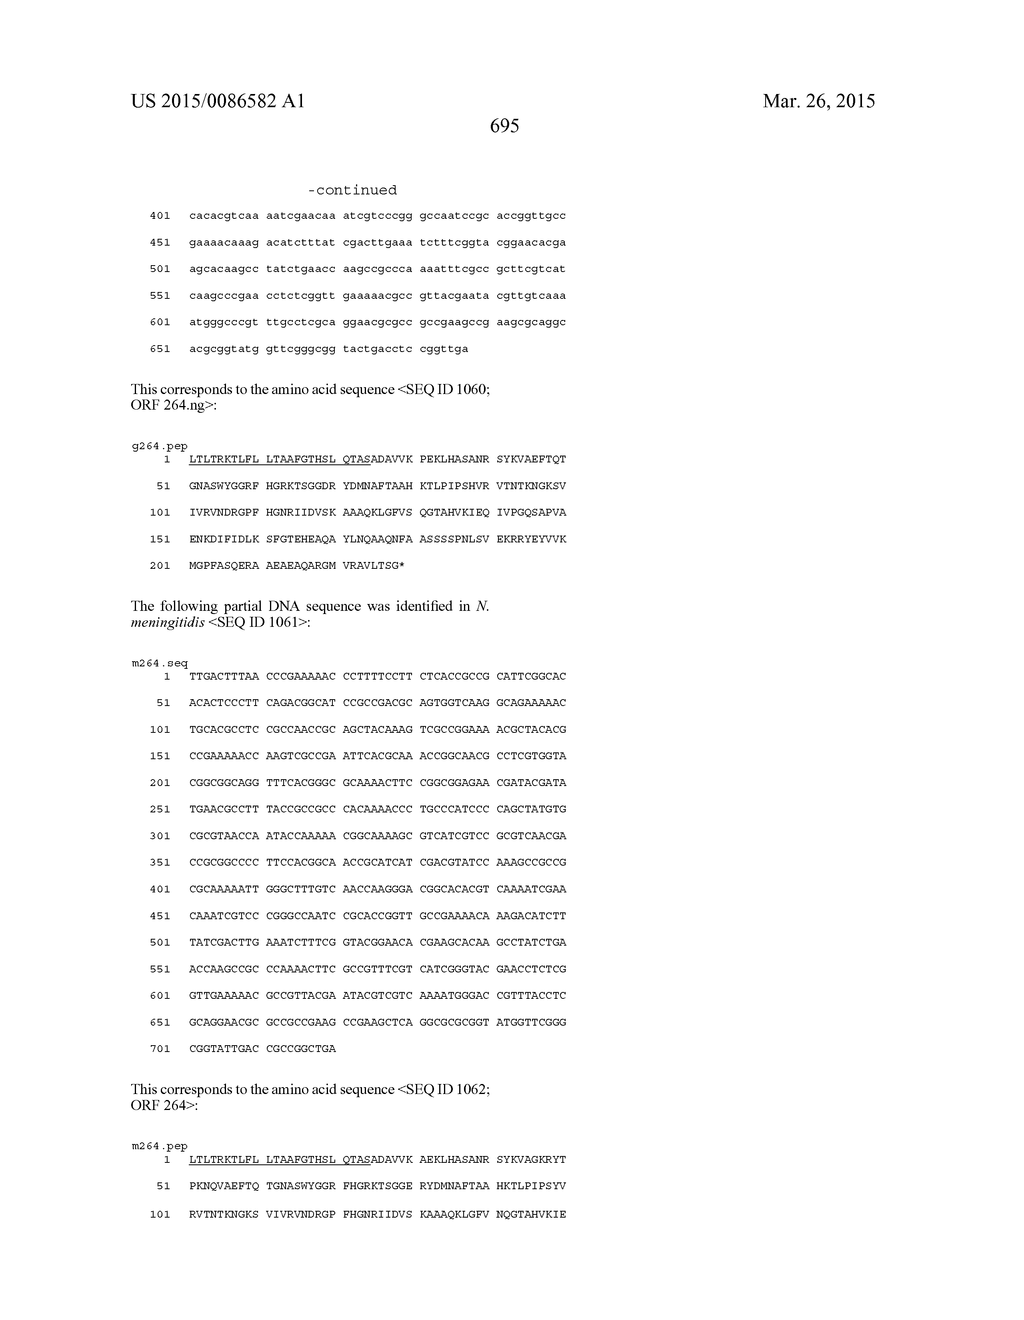 NEISSERIA MENINGITIDIS ANTIGENS AND COMPOSITIONS - diagram, schematic, and image 727